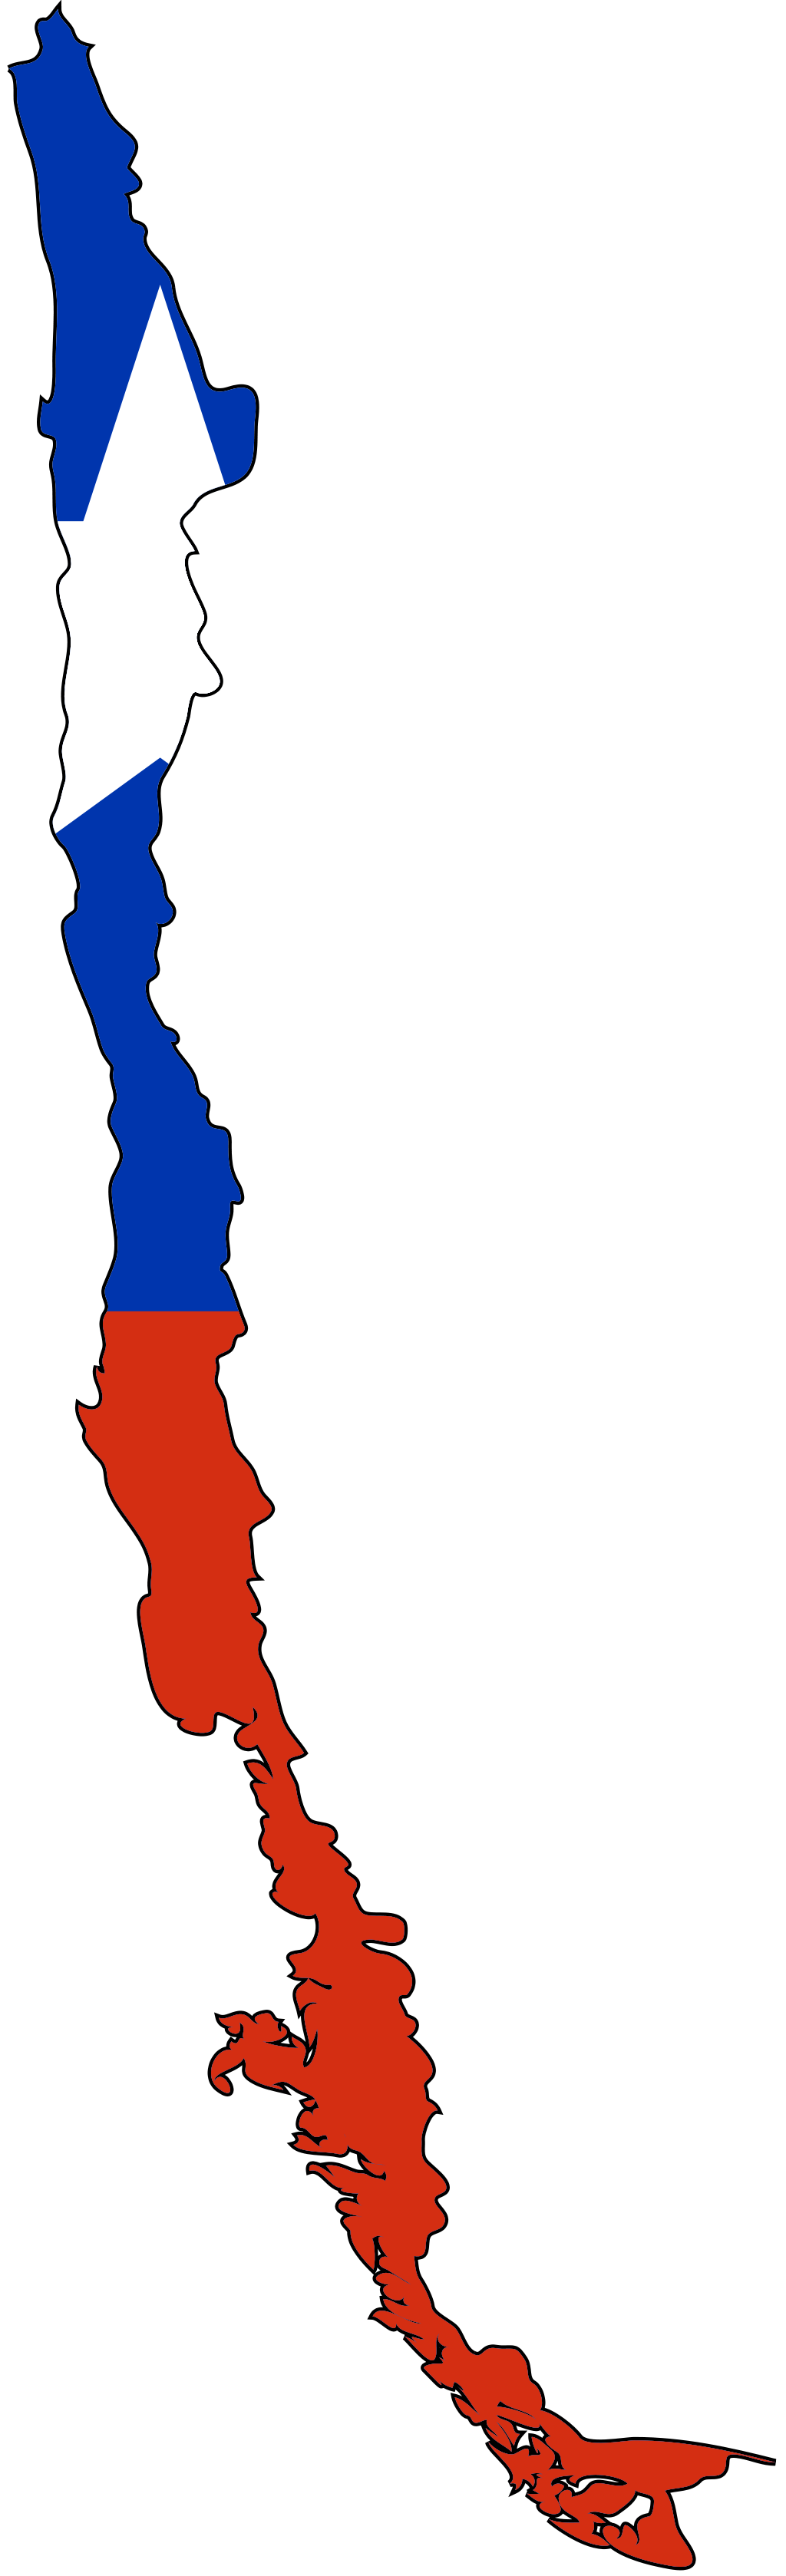 Chile_bayrak_harita.png